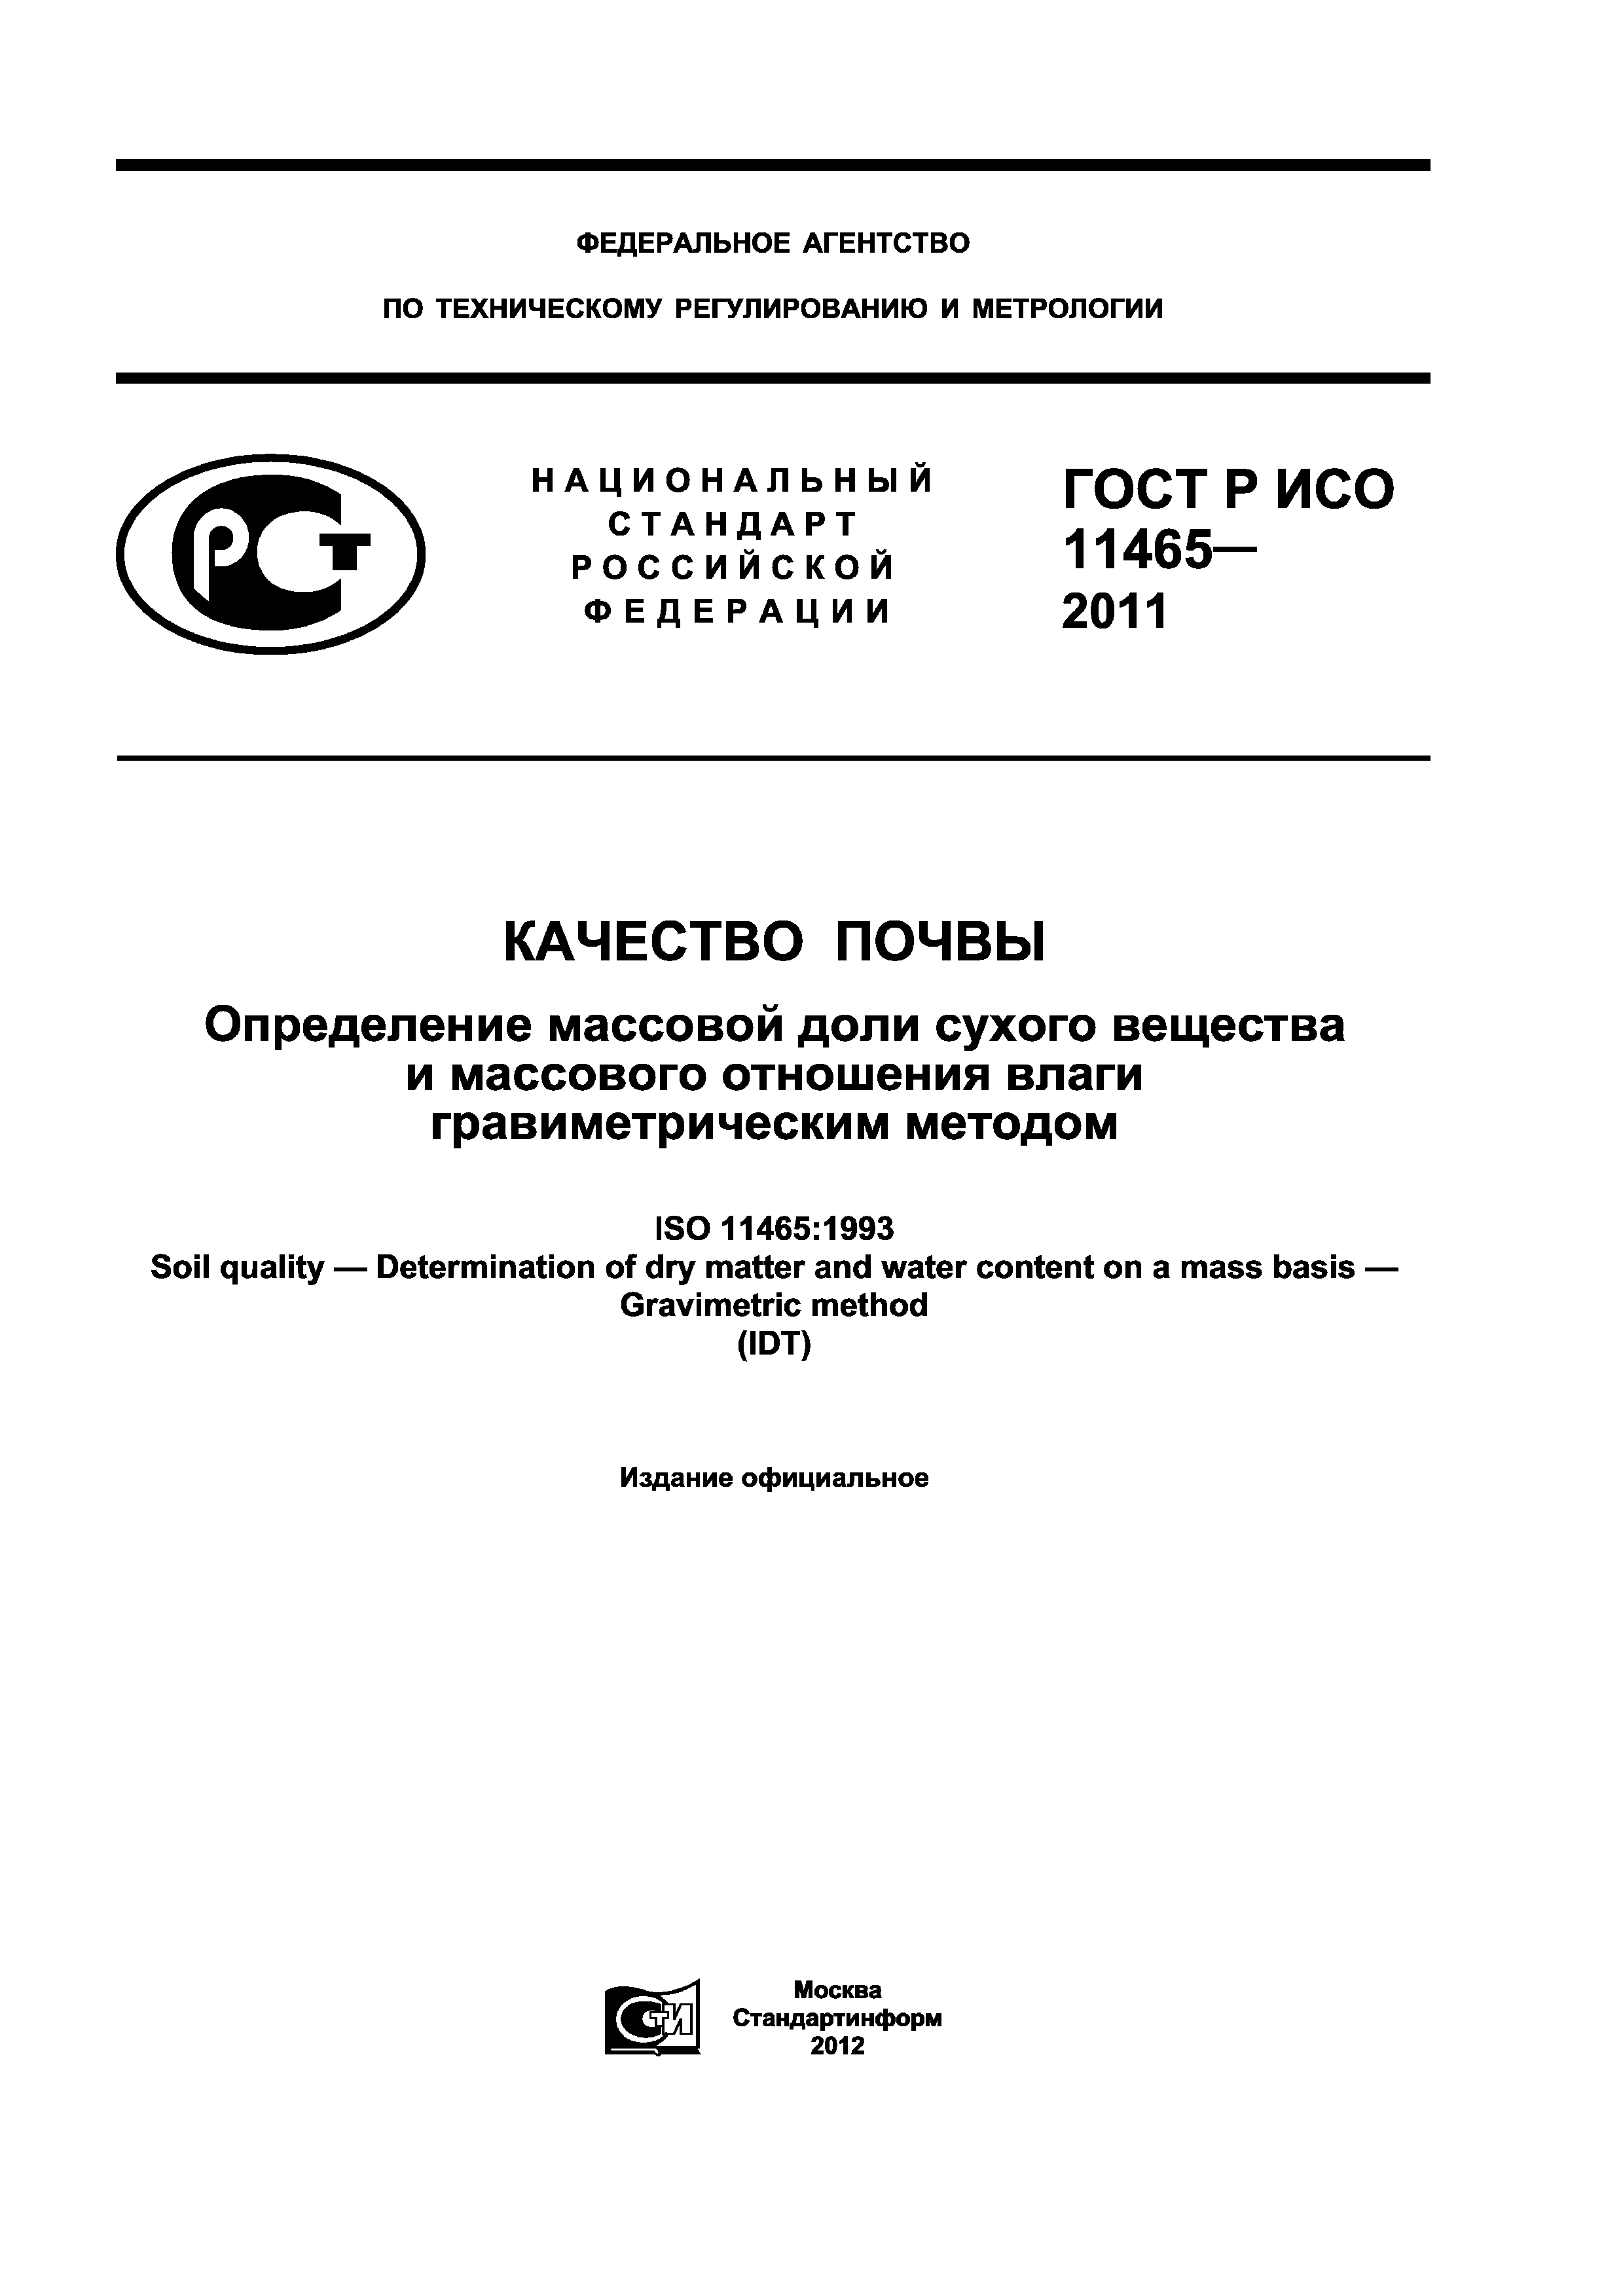 ГОСТ Р ИСО 11465-2011